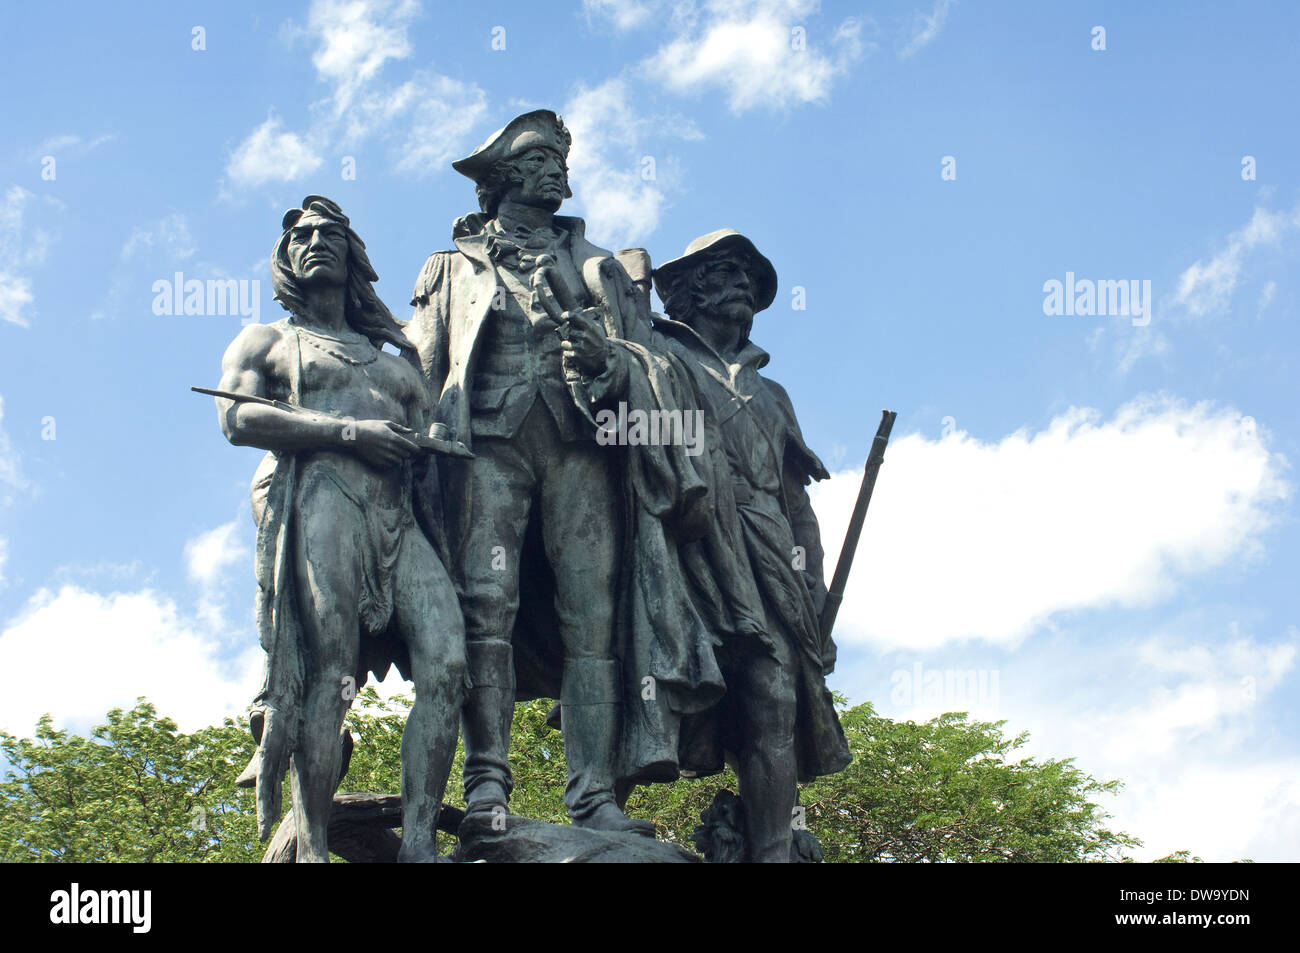 Monument à Anthony Wayne, ses soldats, et les guerriers, Bataille de Fallen Timbers, en Ohio. Photographie numérique Banque D'Images